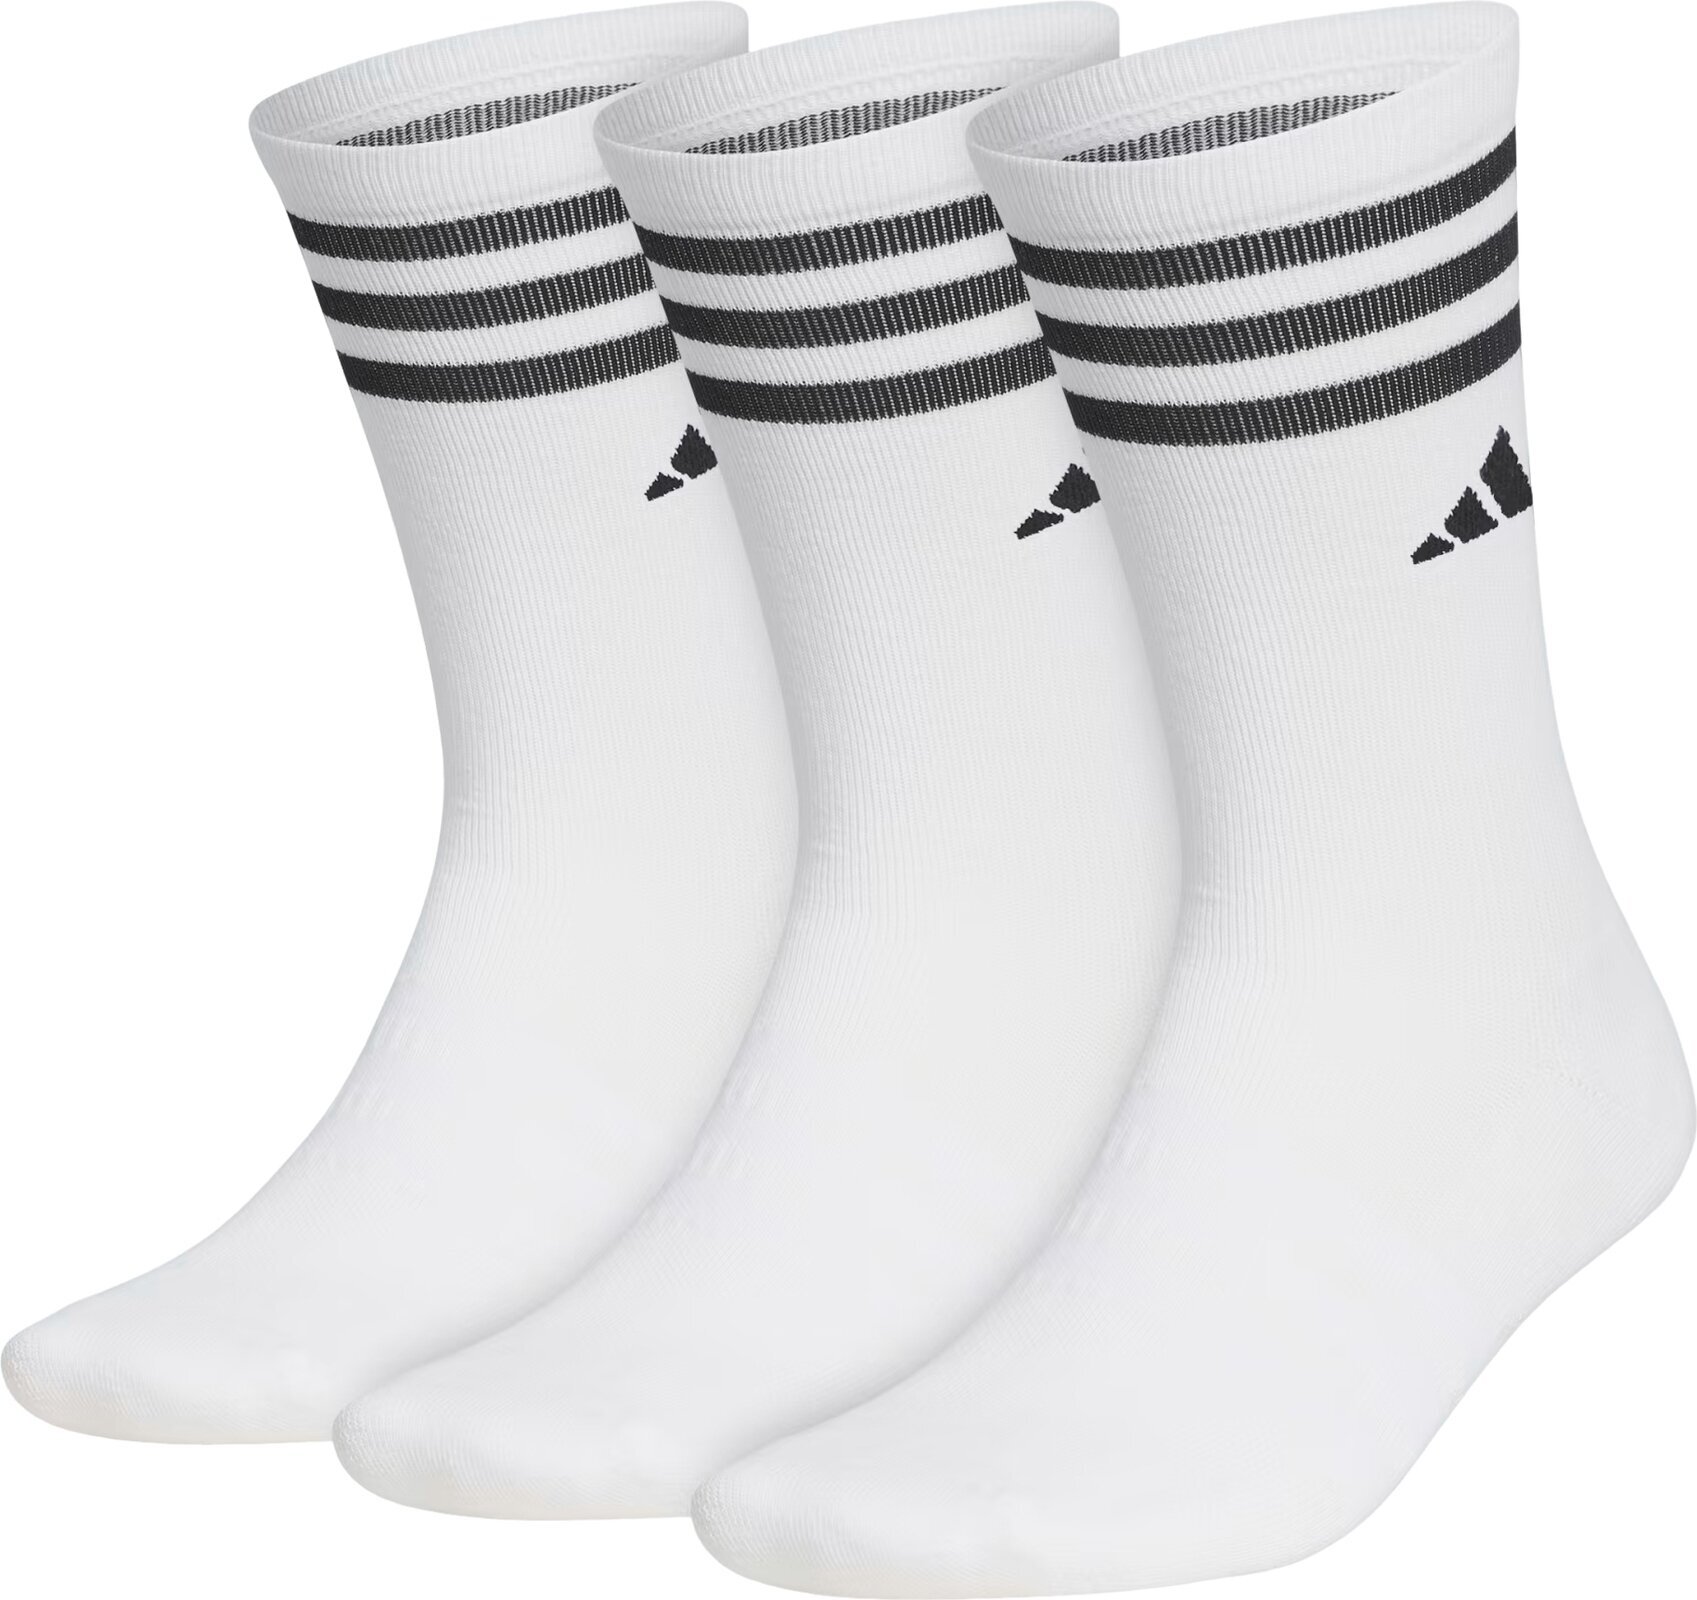 Čarapa Adidas Crew Golf Socks 3-Pairs Čarapa White 43-47